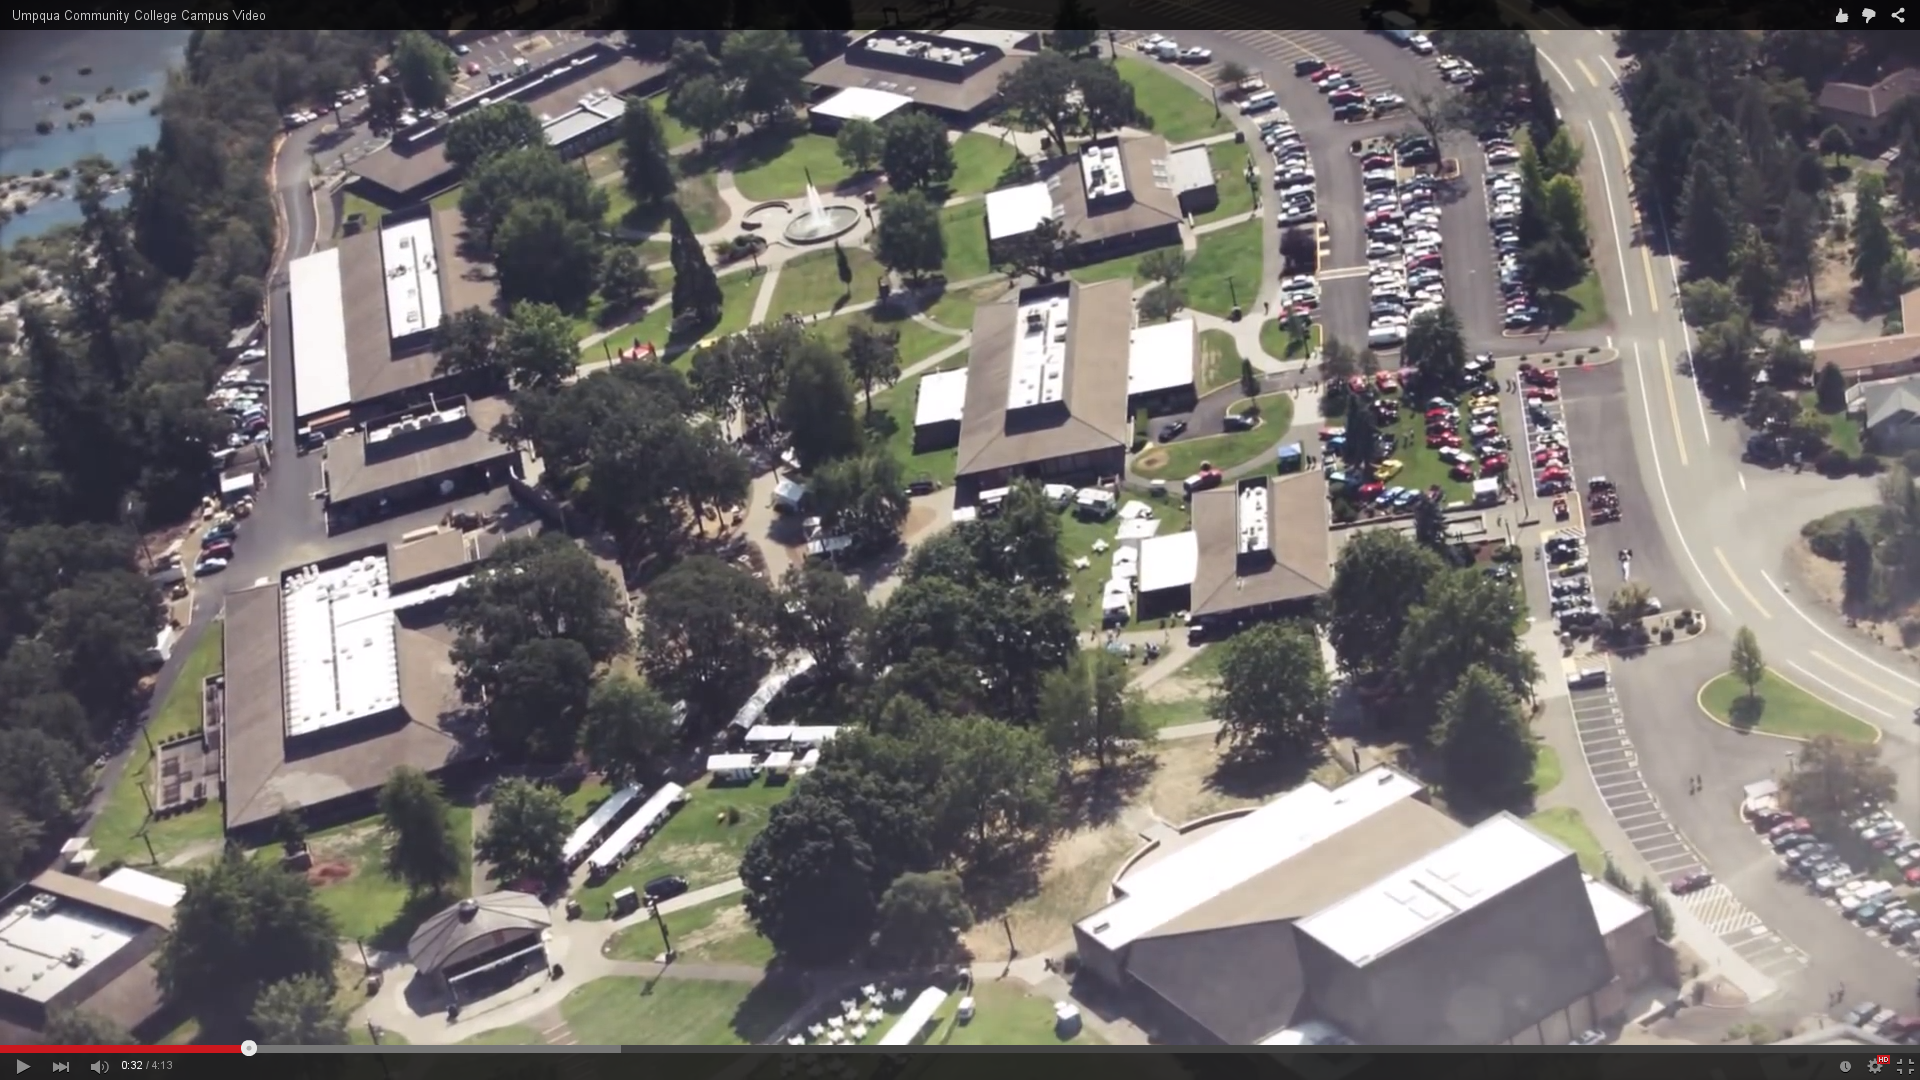 Aerial snapshot of Umpqua Community College